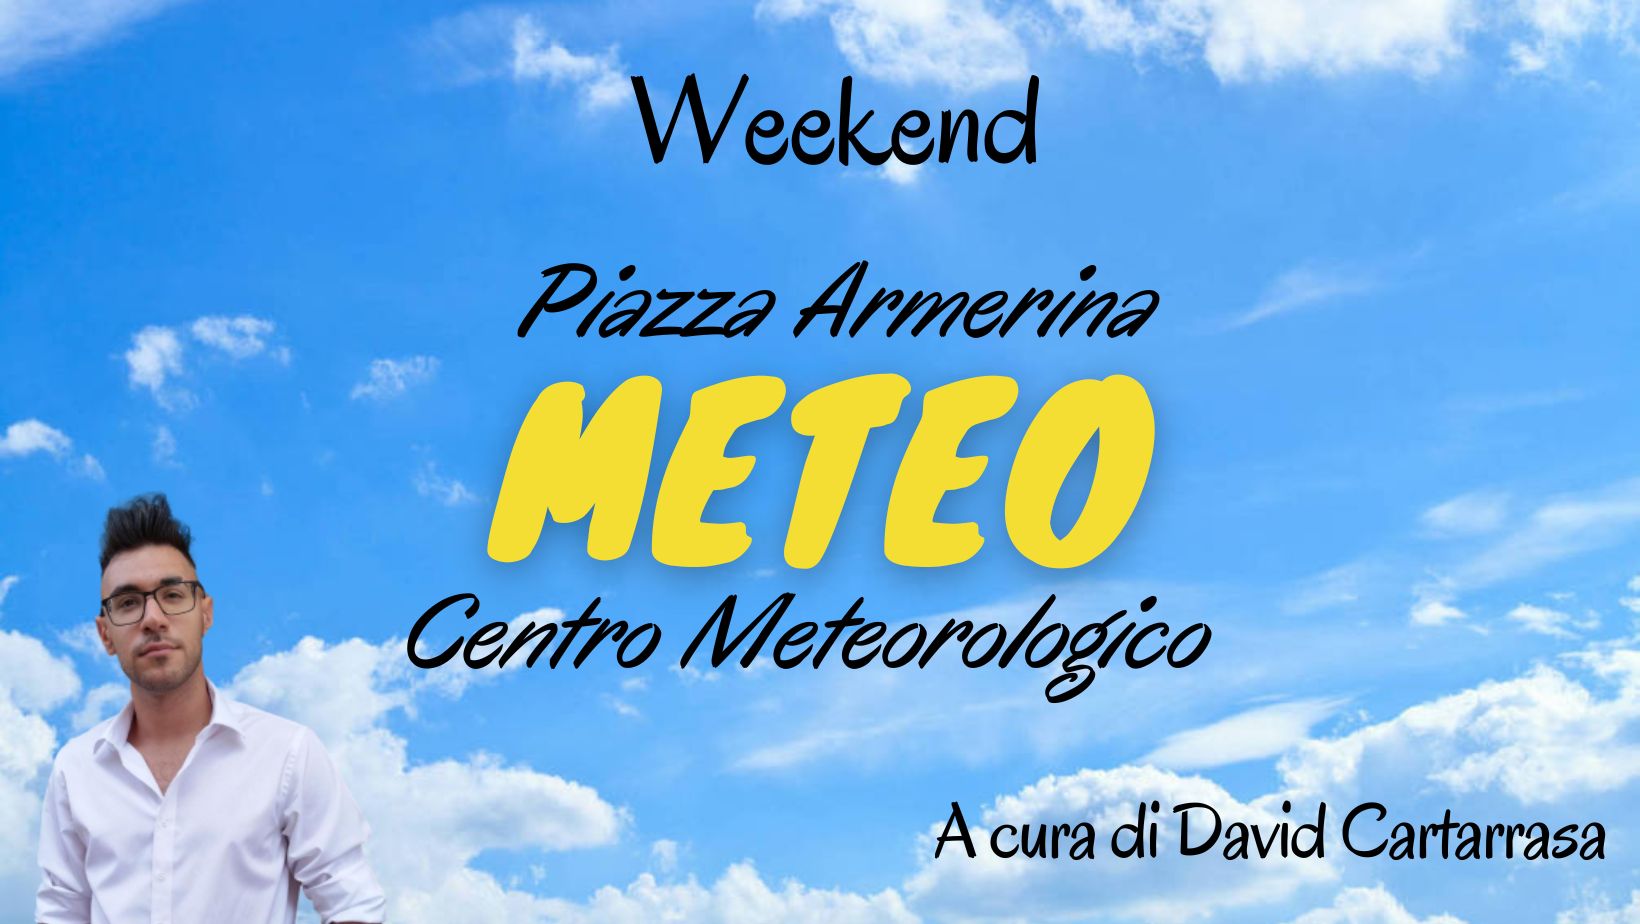 Meteo Piazza Armerina : weekend tra sole e nuvole, qualche pioggia tra sabato e domenica